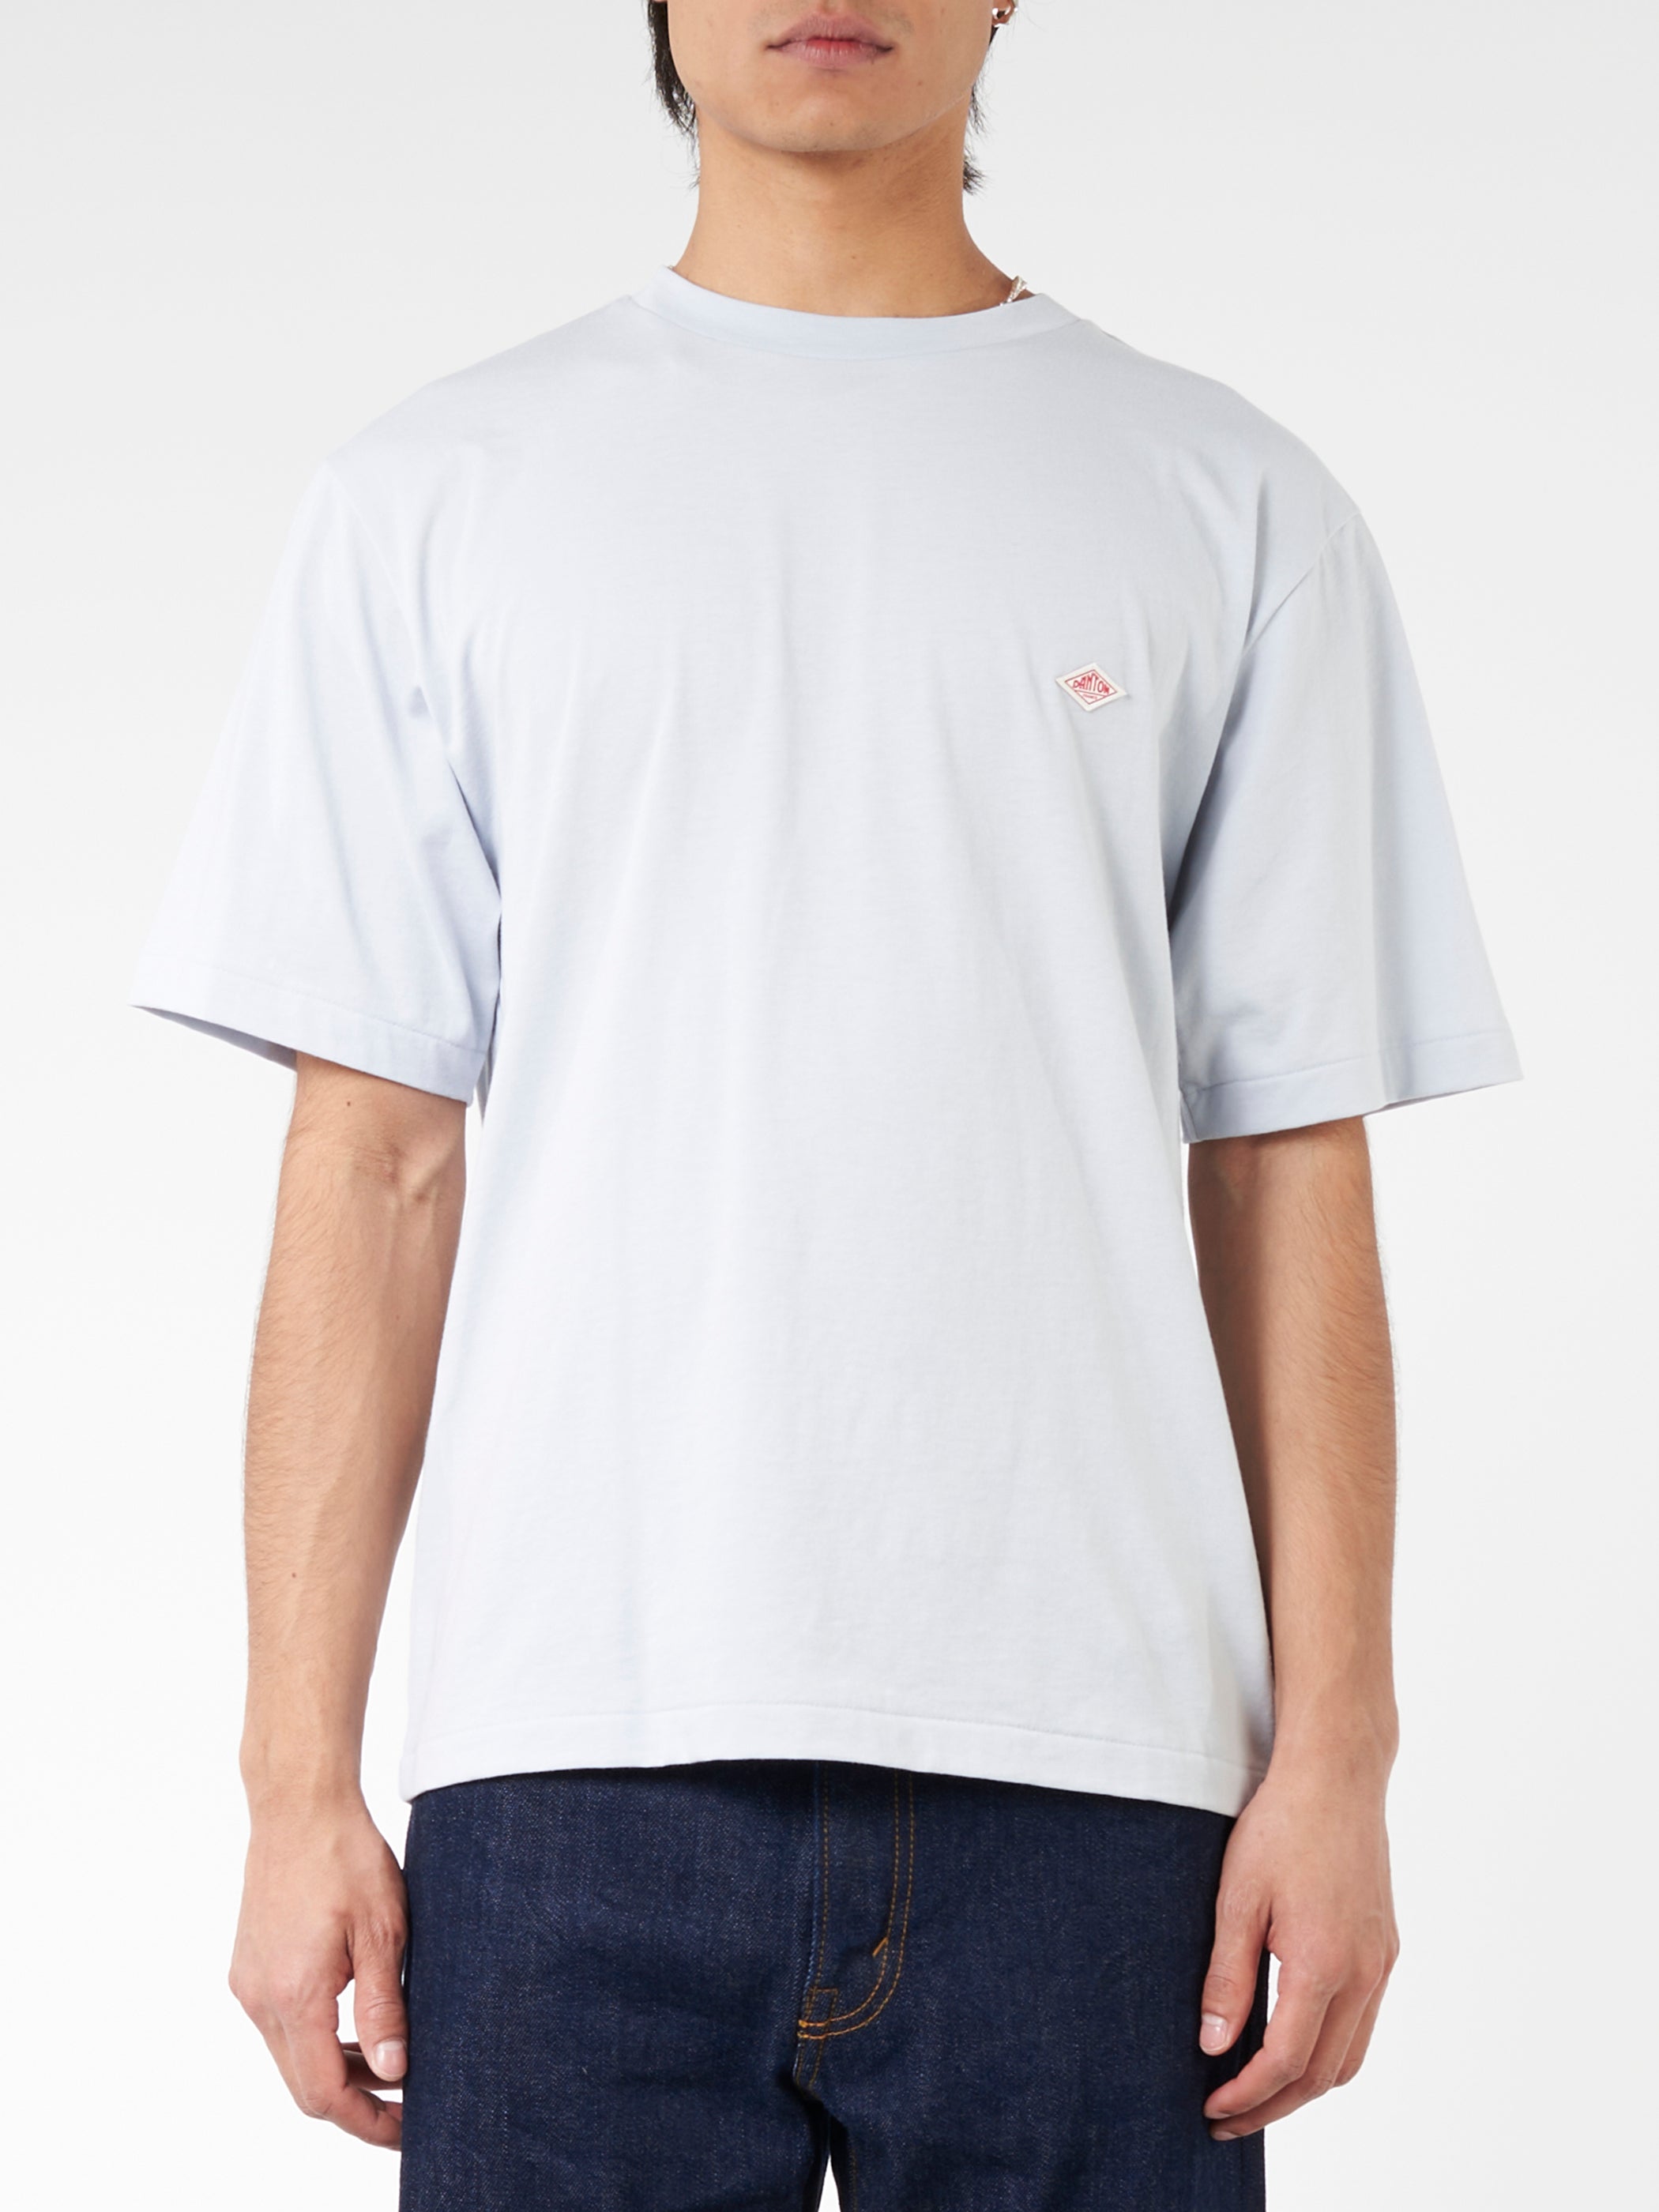 Men's Short Sleeve Inner T-Shirt